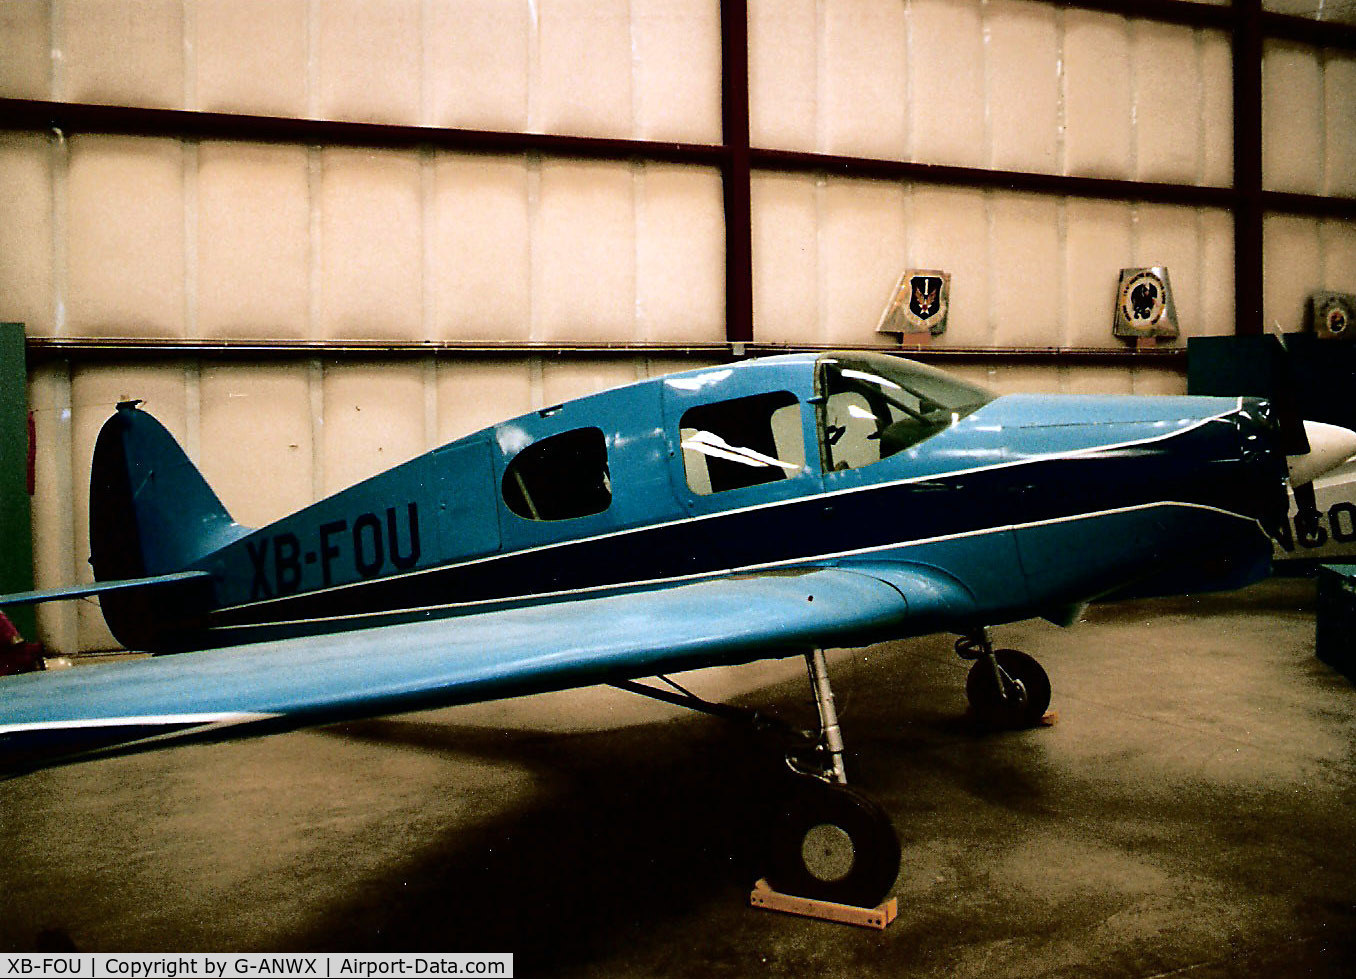 XB-FOU, Bellanca 14-13-2 Cruisair Senior C/N 1551, Bellanca Cruisair Senior at the Pima Aerospace Museum, Tucson, AZ in 1998.